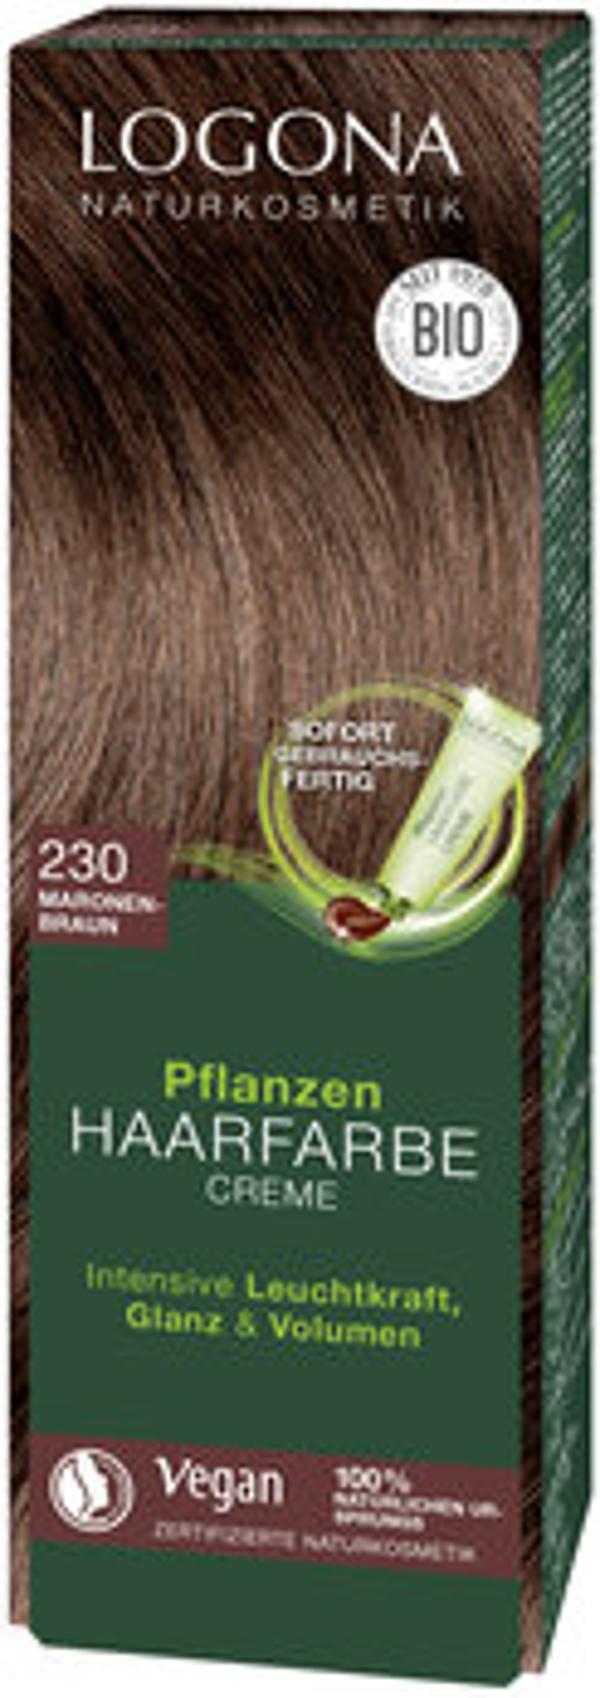 Produktfoto zu Pflanzen Haarfarbe Creme 230 maronenbraun 150ml